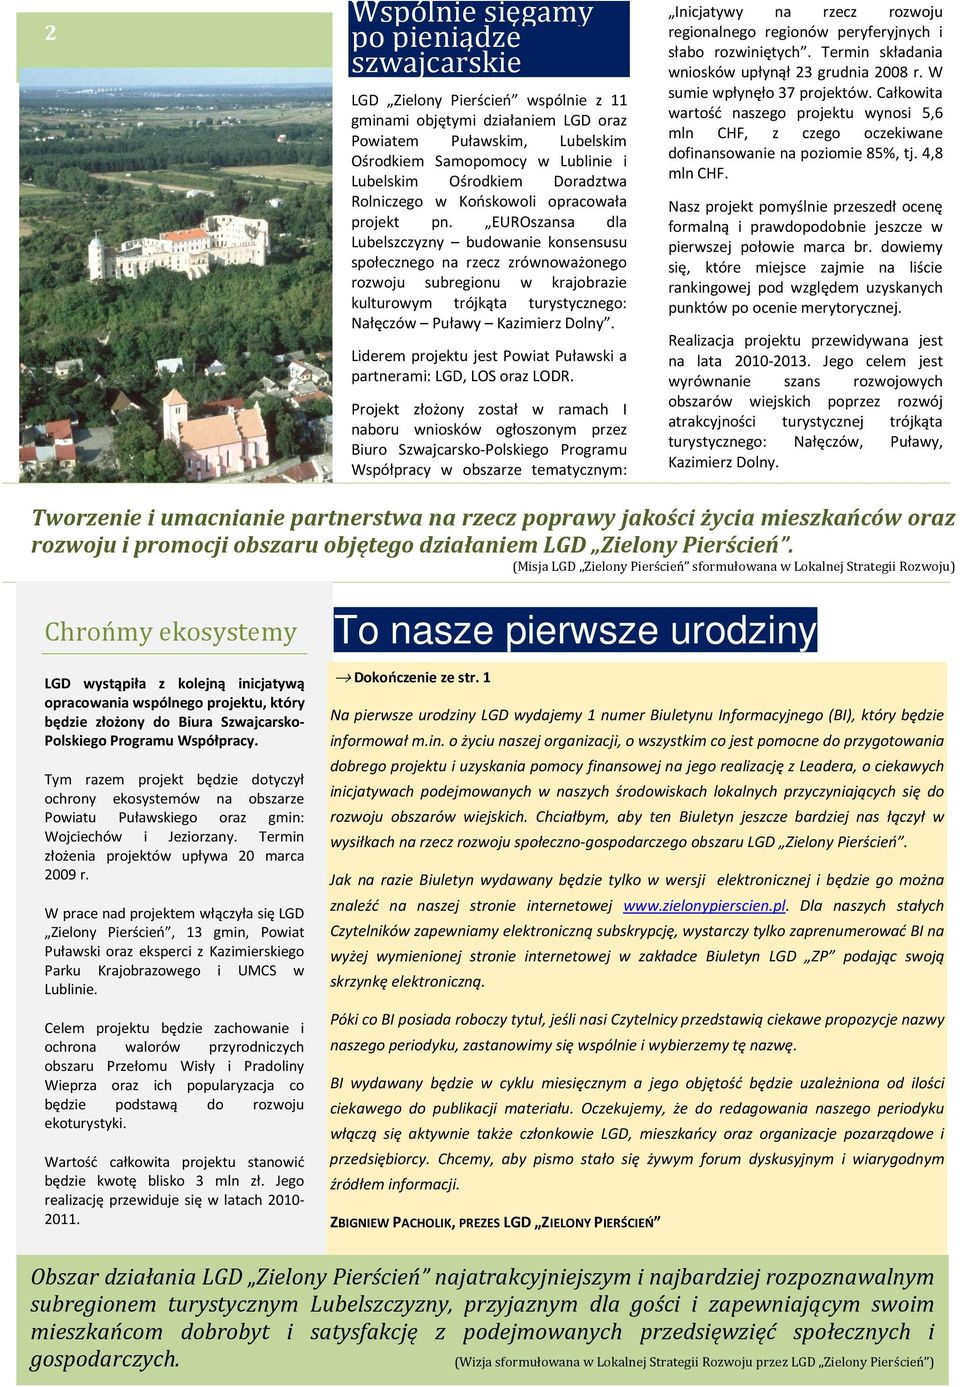 EUROszansa dla Lubelszczyzny budowanie konsensusu społecznego na rzecz zrównoważonego rozwoju subregionu w krajobrazie kulturowym trójkąta turystycznego: Nałęczów Puławy Kazimierz Dolny.